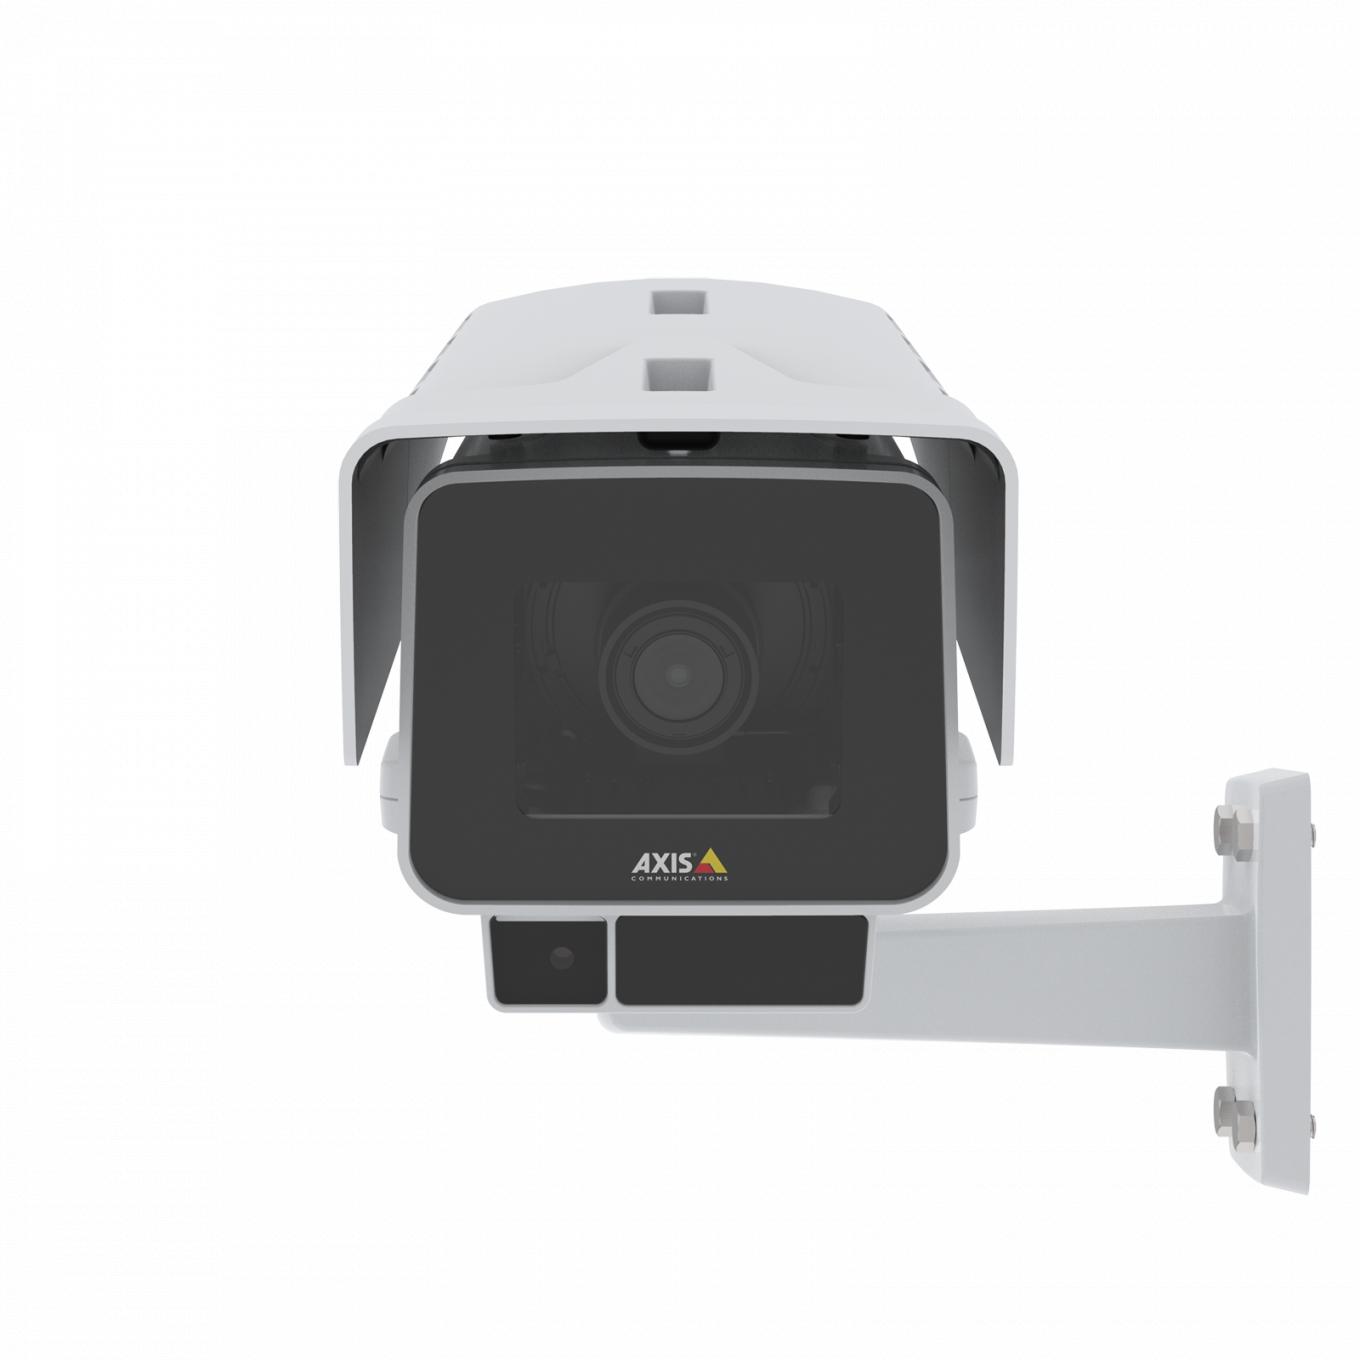 AXIS P1377-LE IP Camera ma funkcje OptimizedIR i Forensic WDR. Widok produktu z przodu.